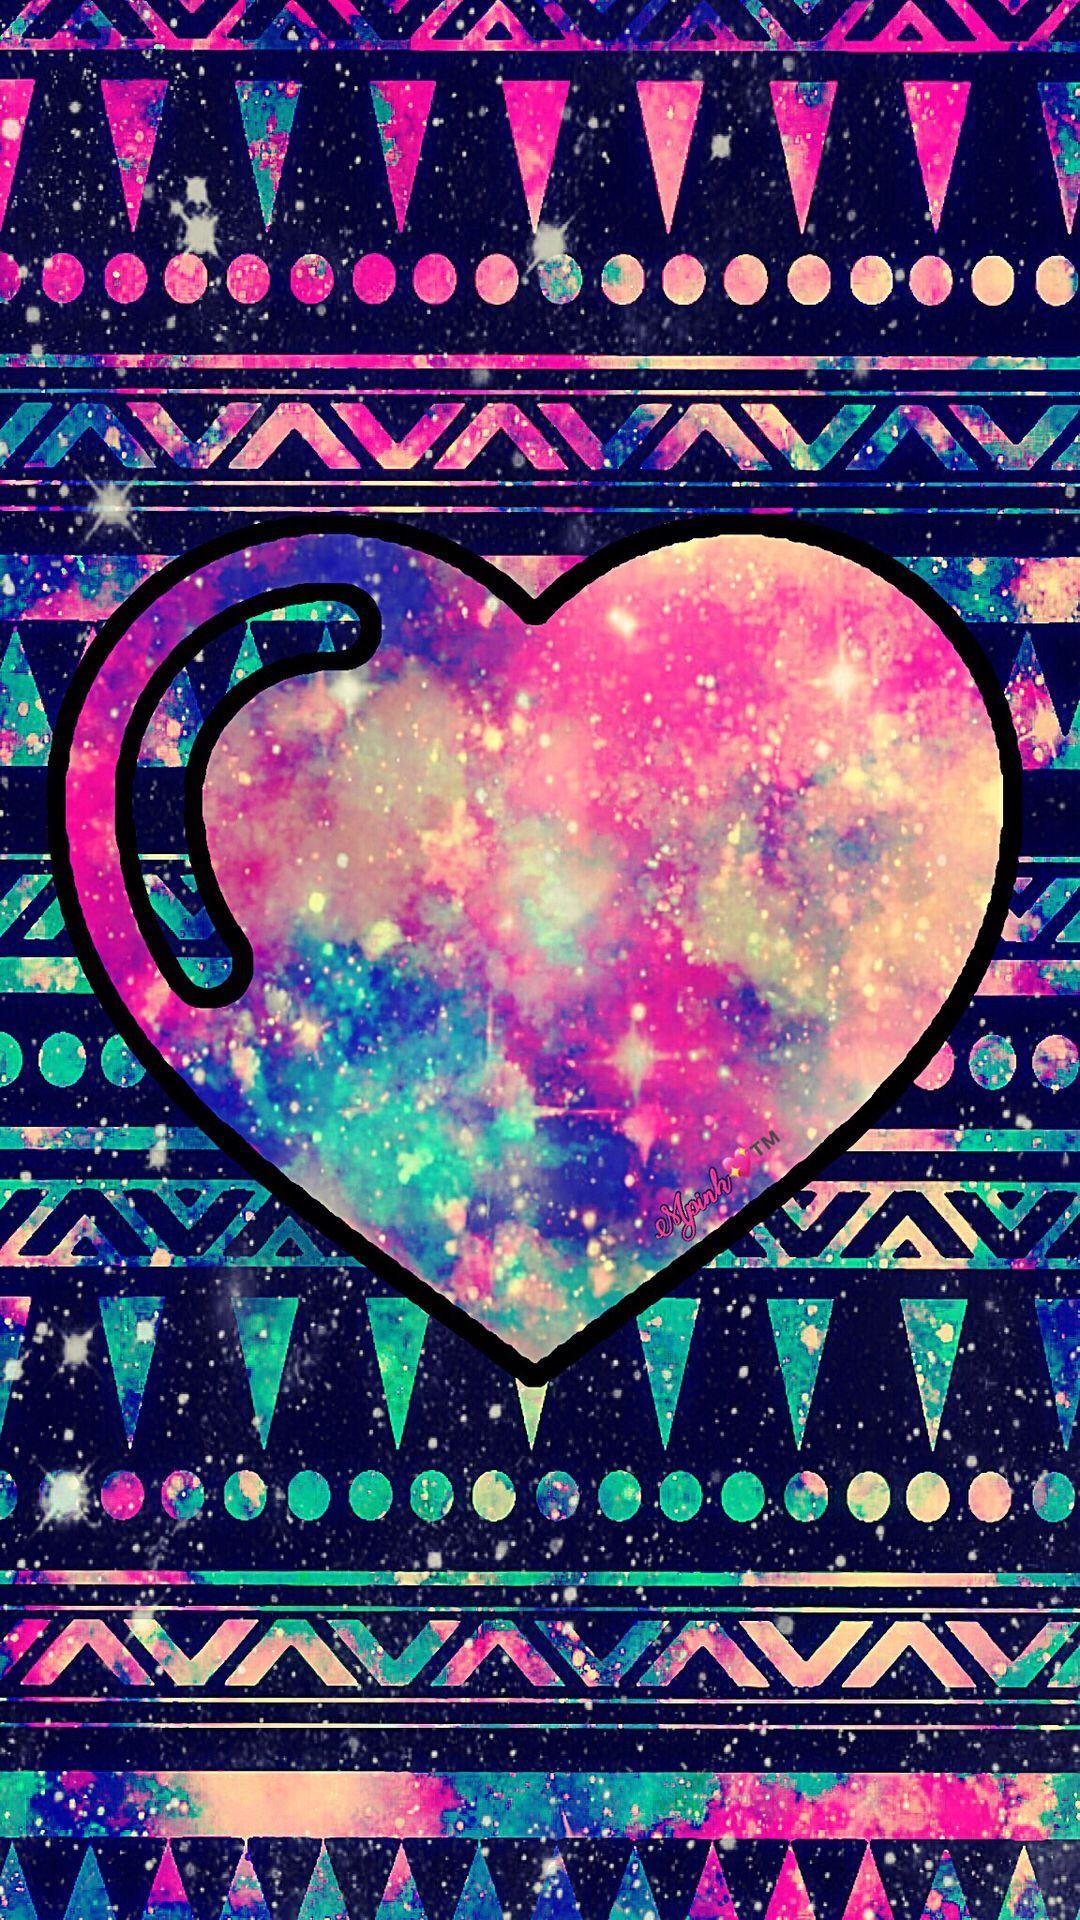 Aztec Heart Galaxy Wallpaper #androidwallpaper #iphonewallpaper